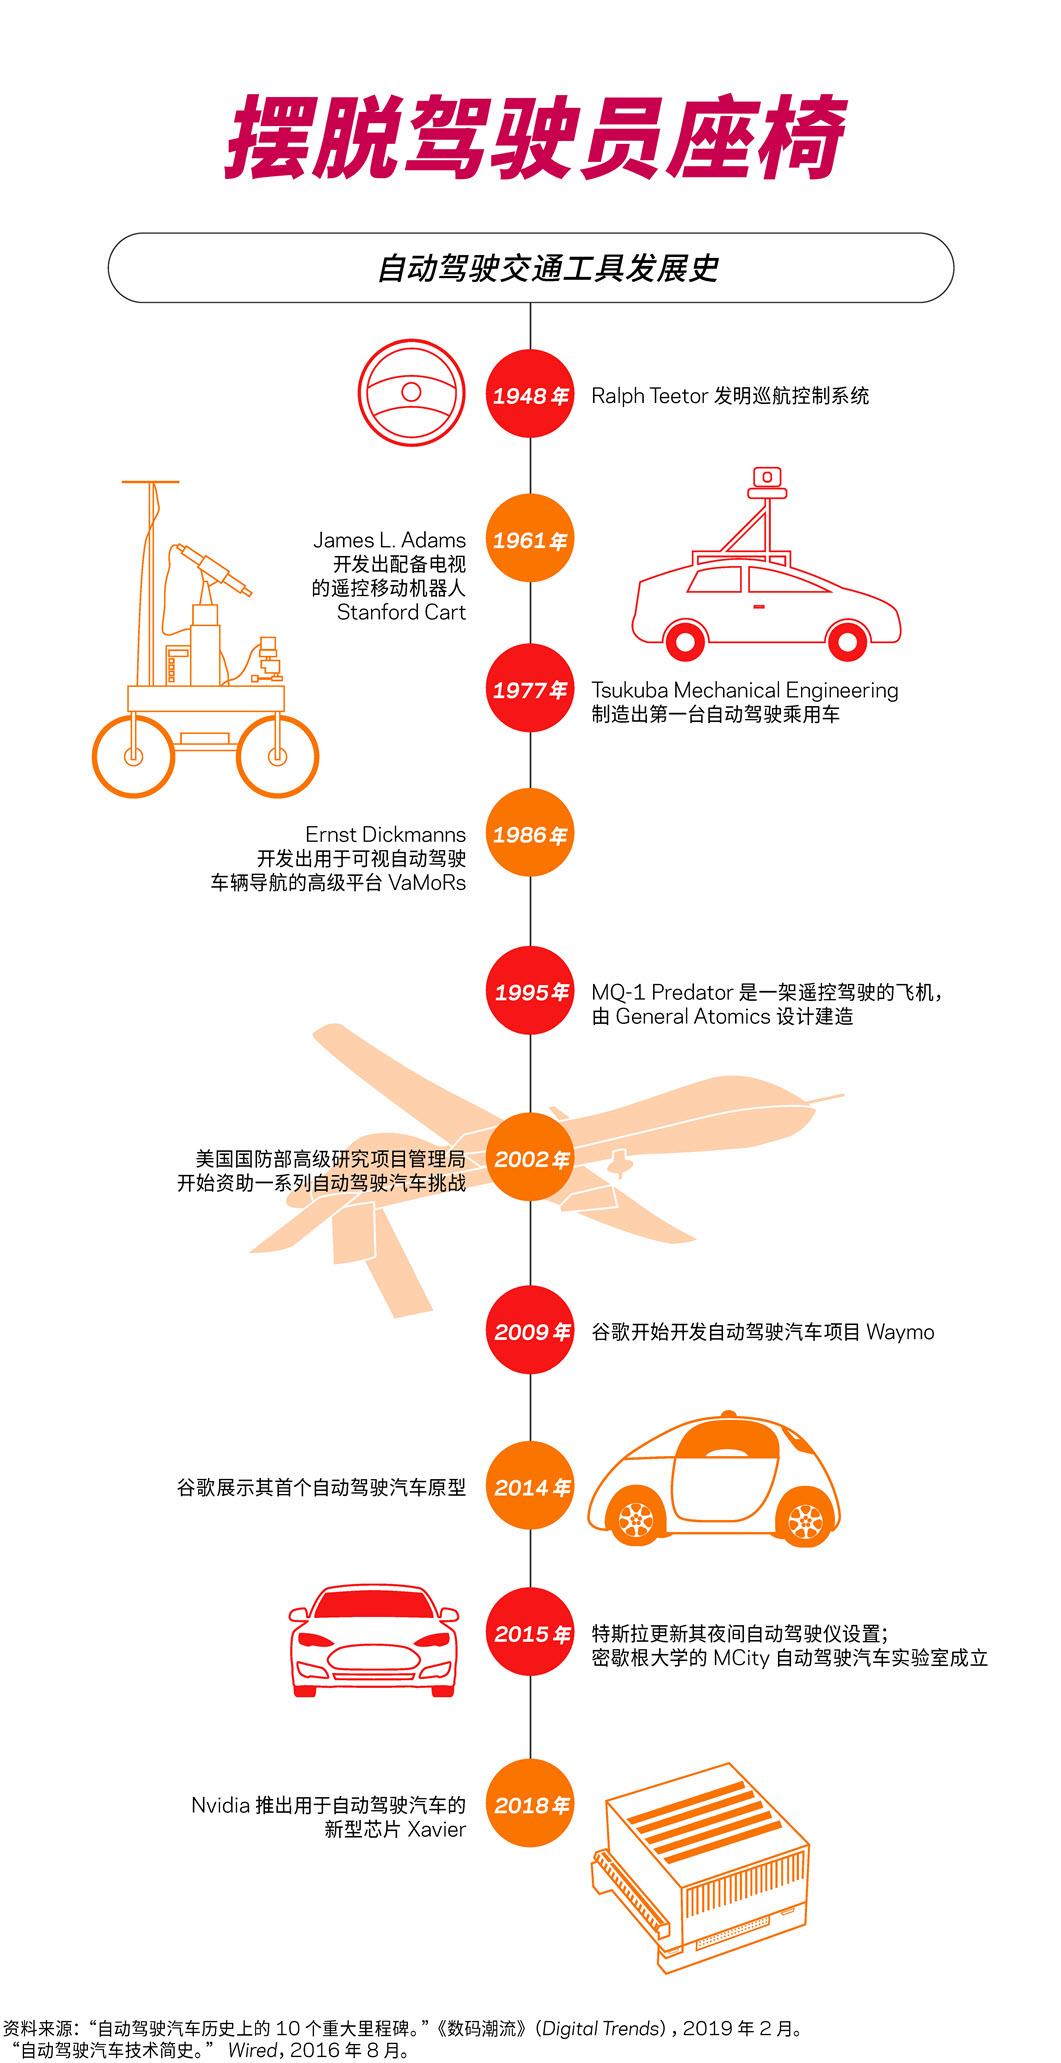  Eine Infografik erklärt die Entwicklung autonomer Fahrzeuge im Laufe der Geschichte.